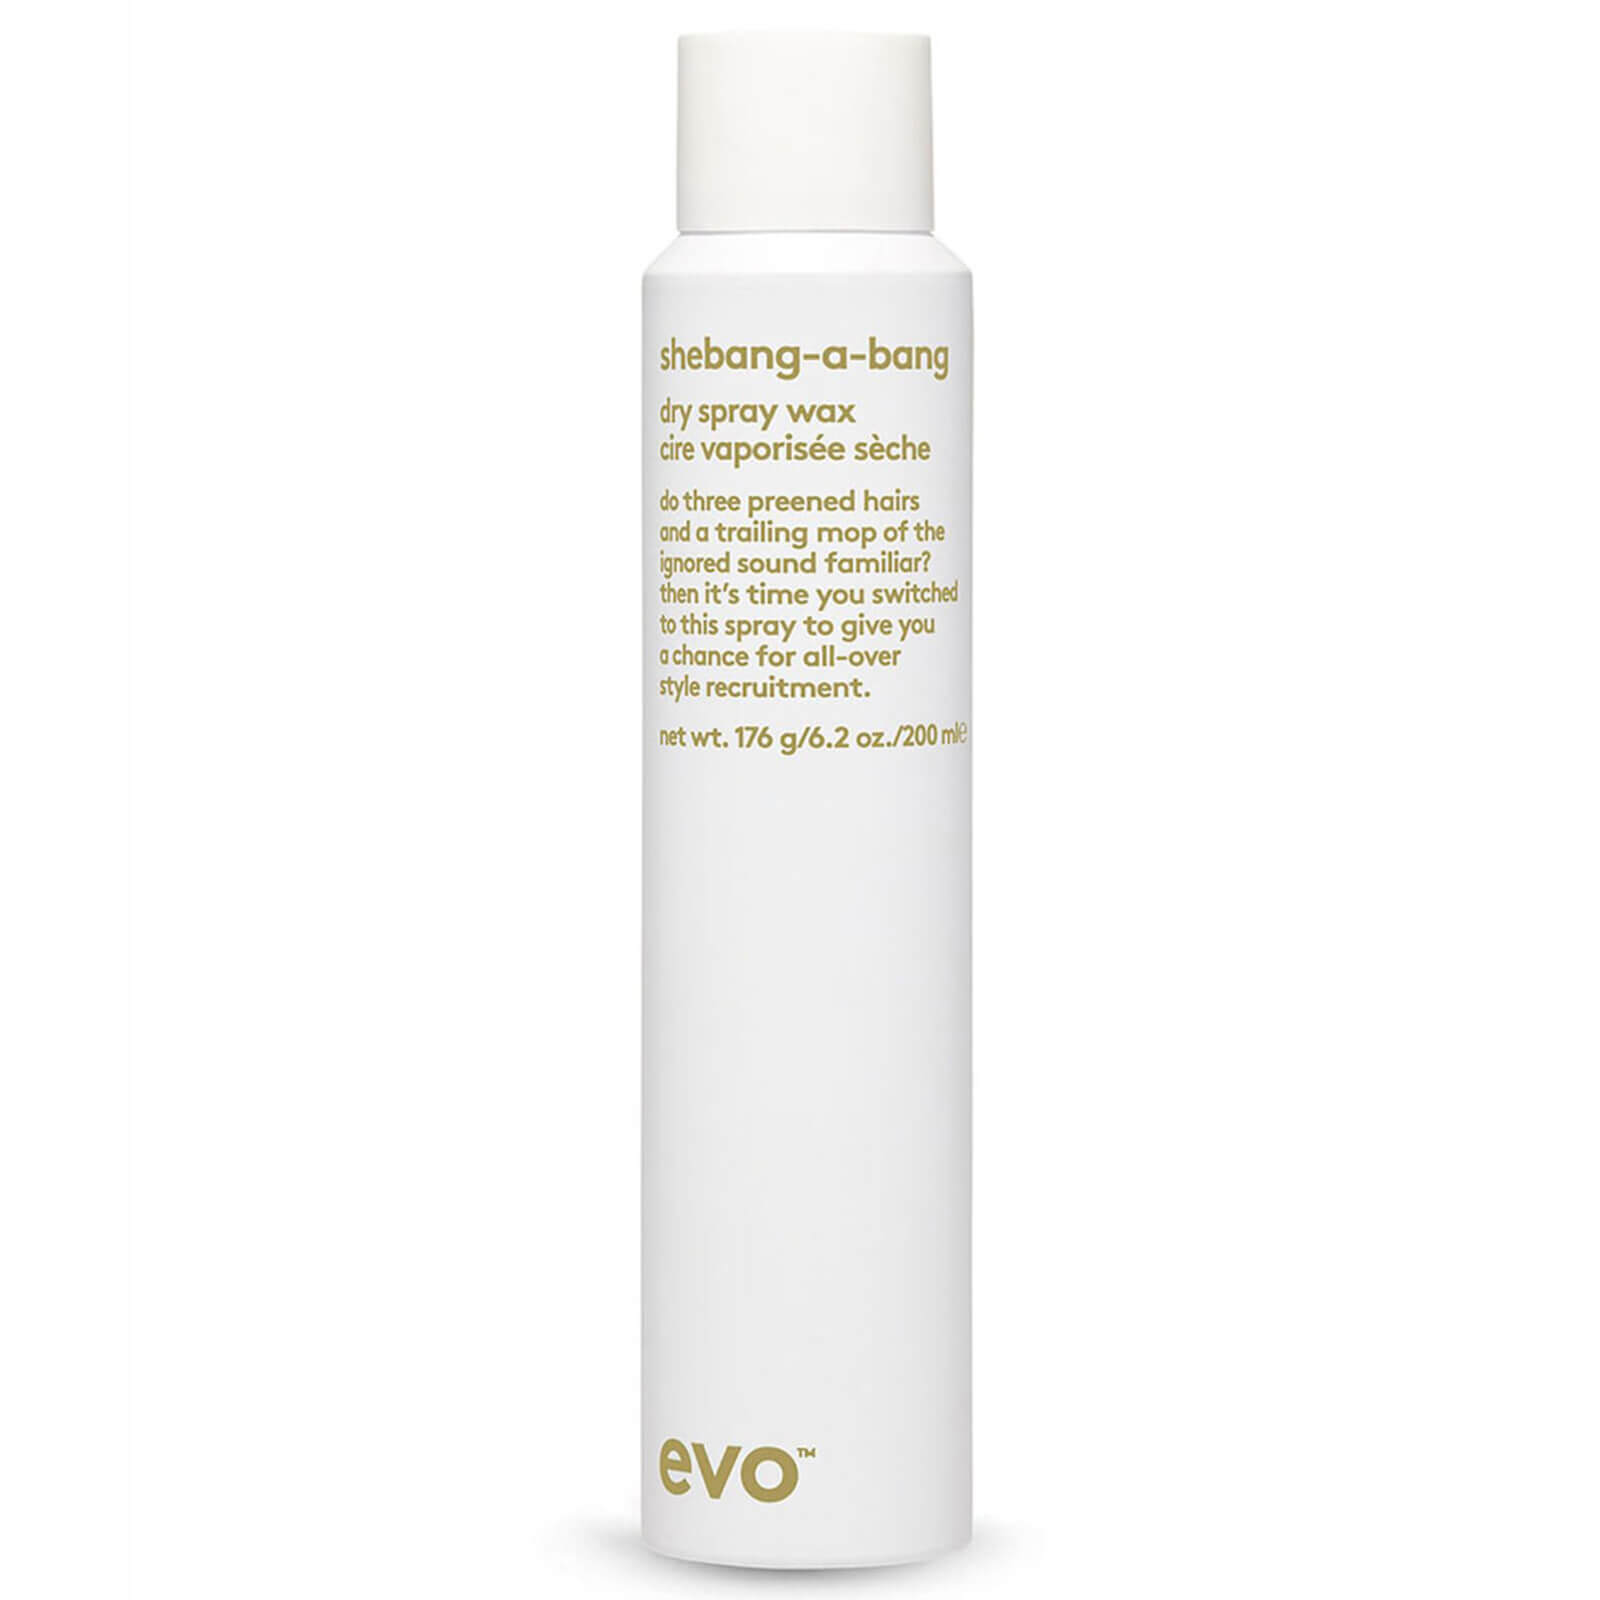 Dry Spray Wax Shebang-a-Bang de evo (200 ml)